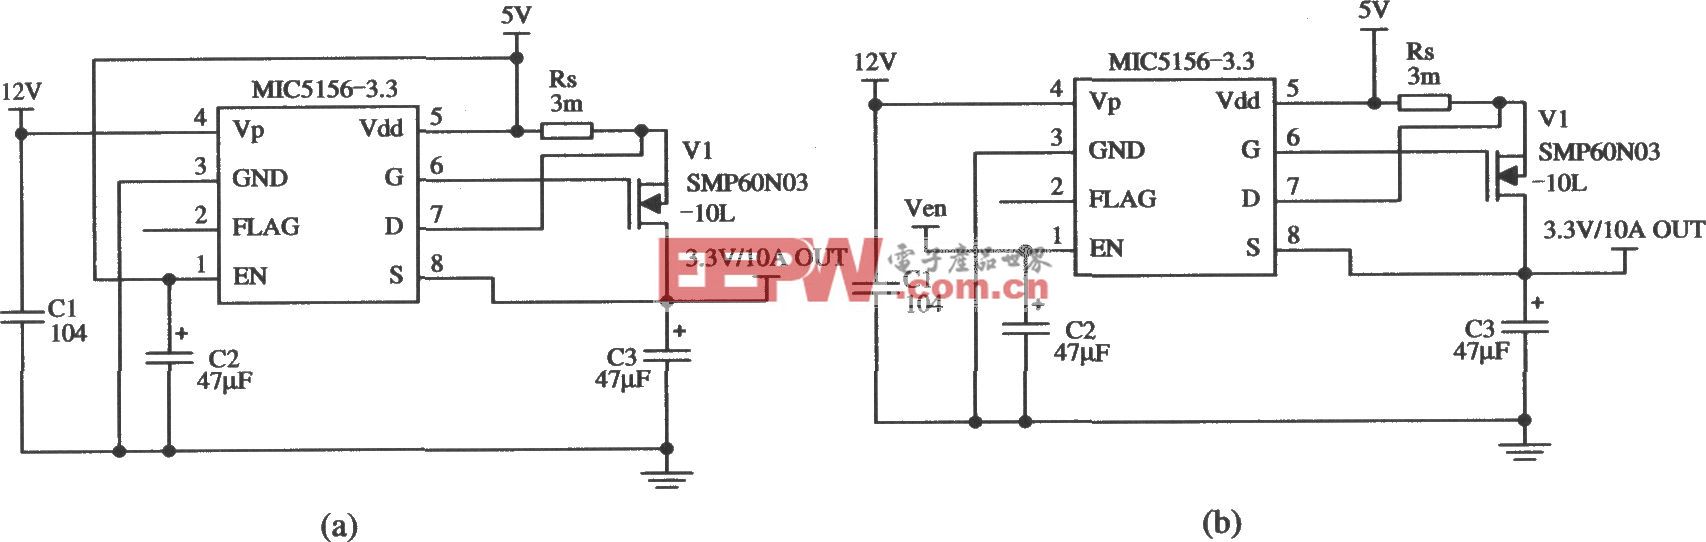 由MIC5156-3.3构成的由5V变为3.3V的稳压器电路